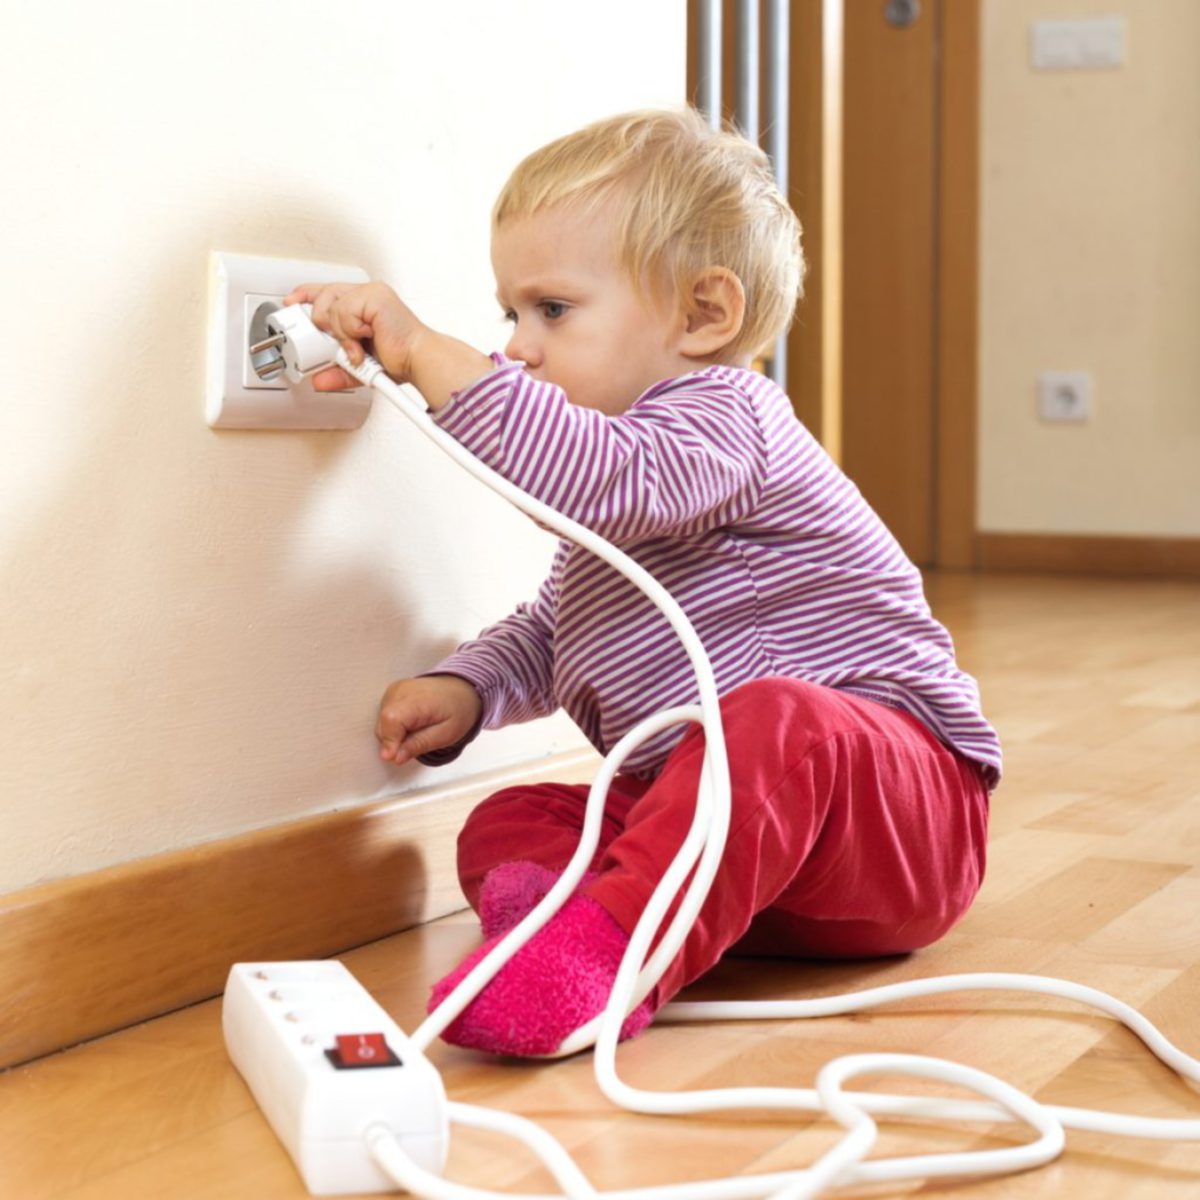 KEJUTAN elektrik antara risiko sering terdedah kepada bayi.